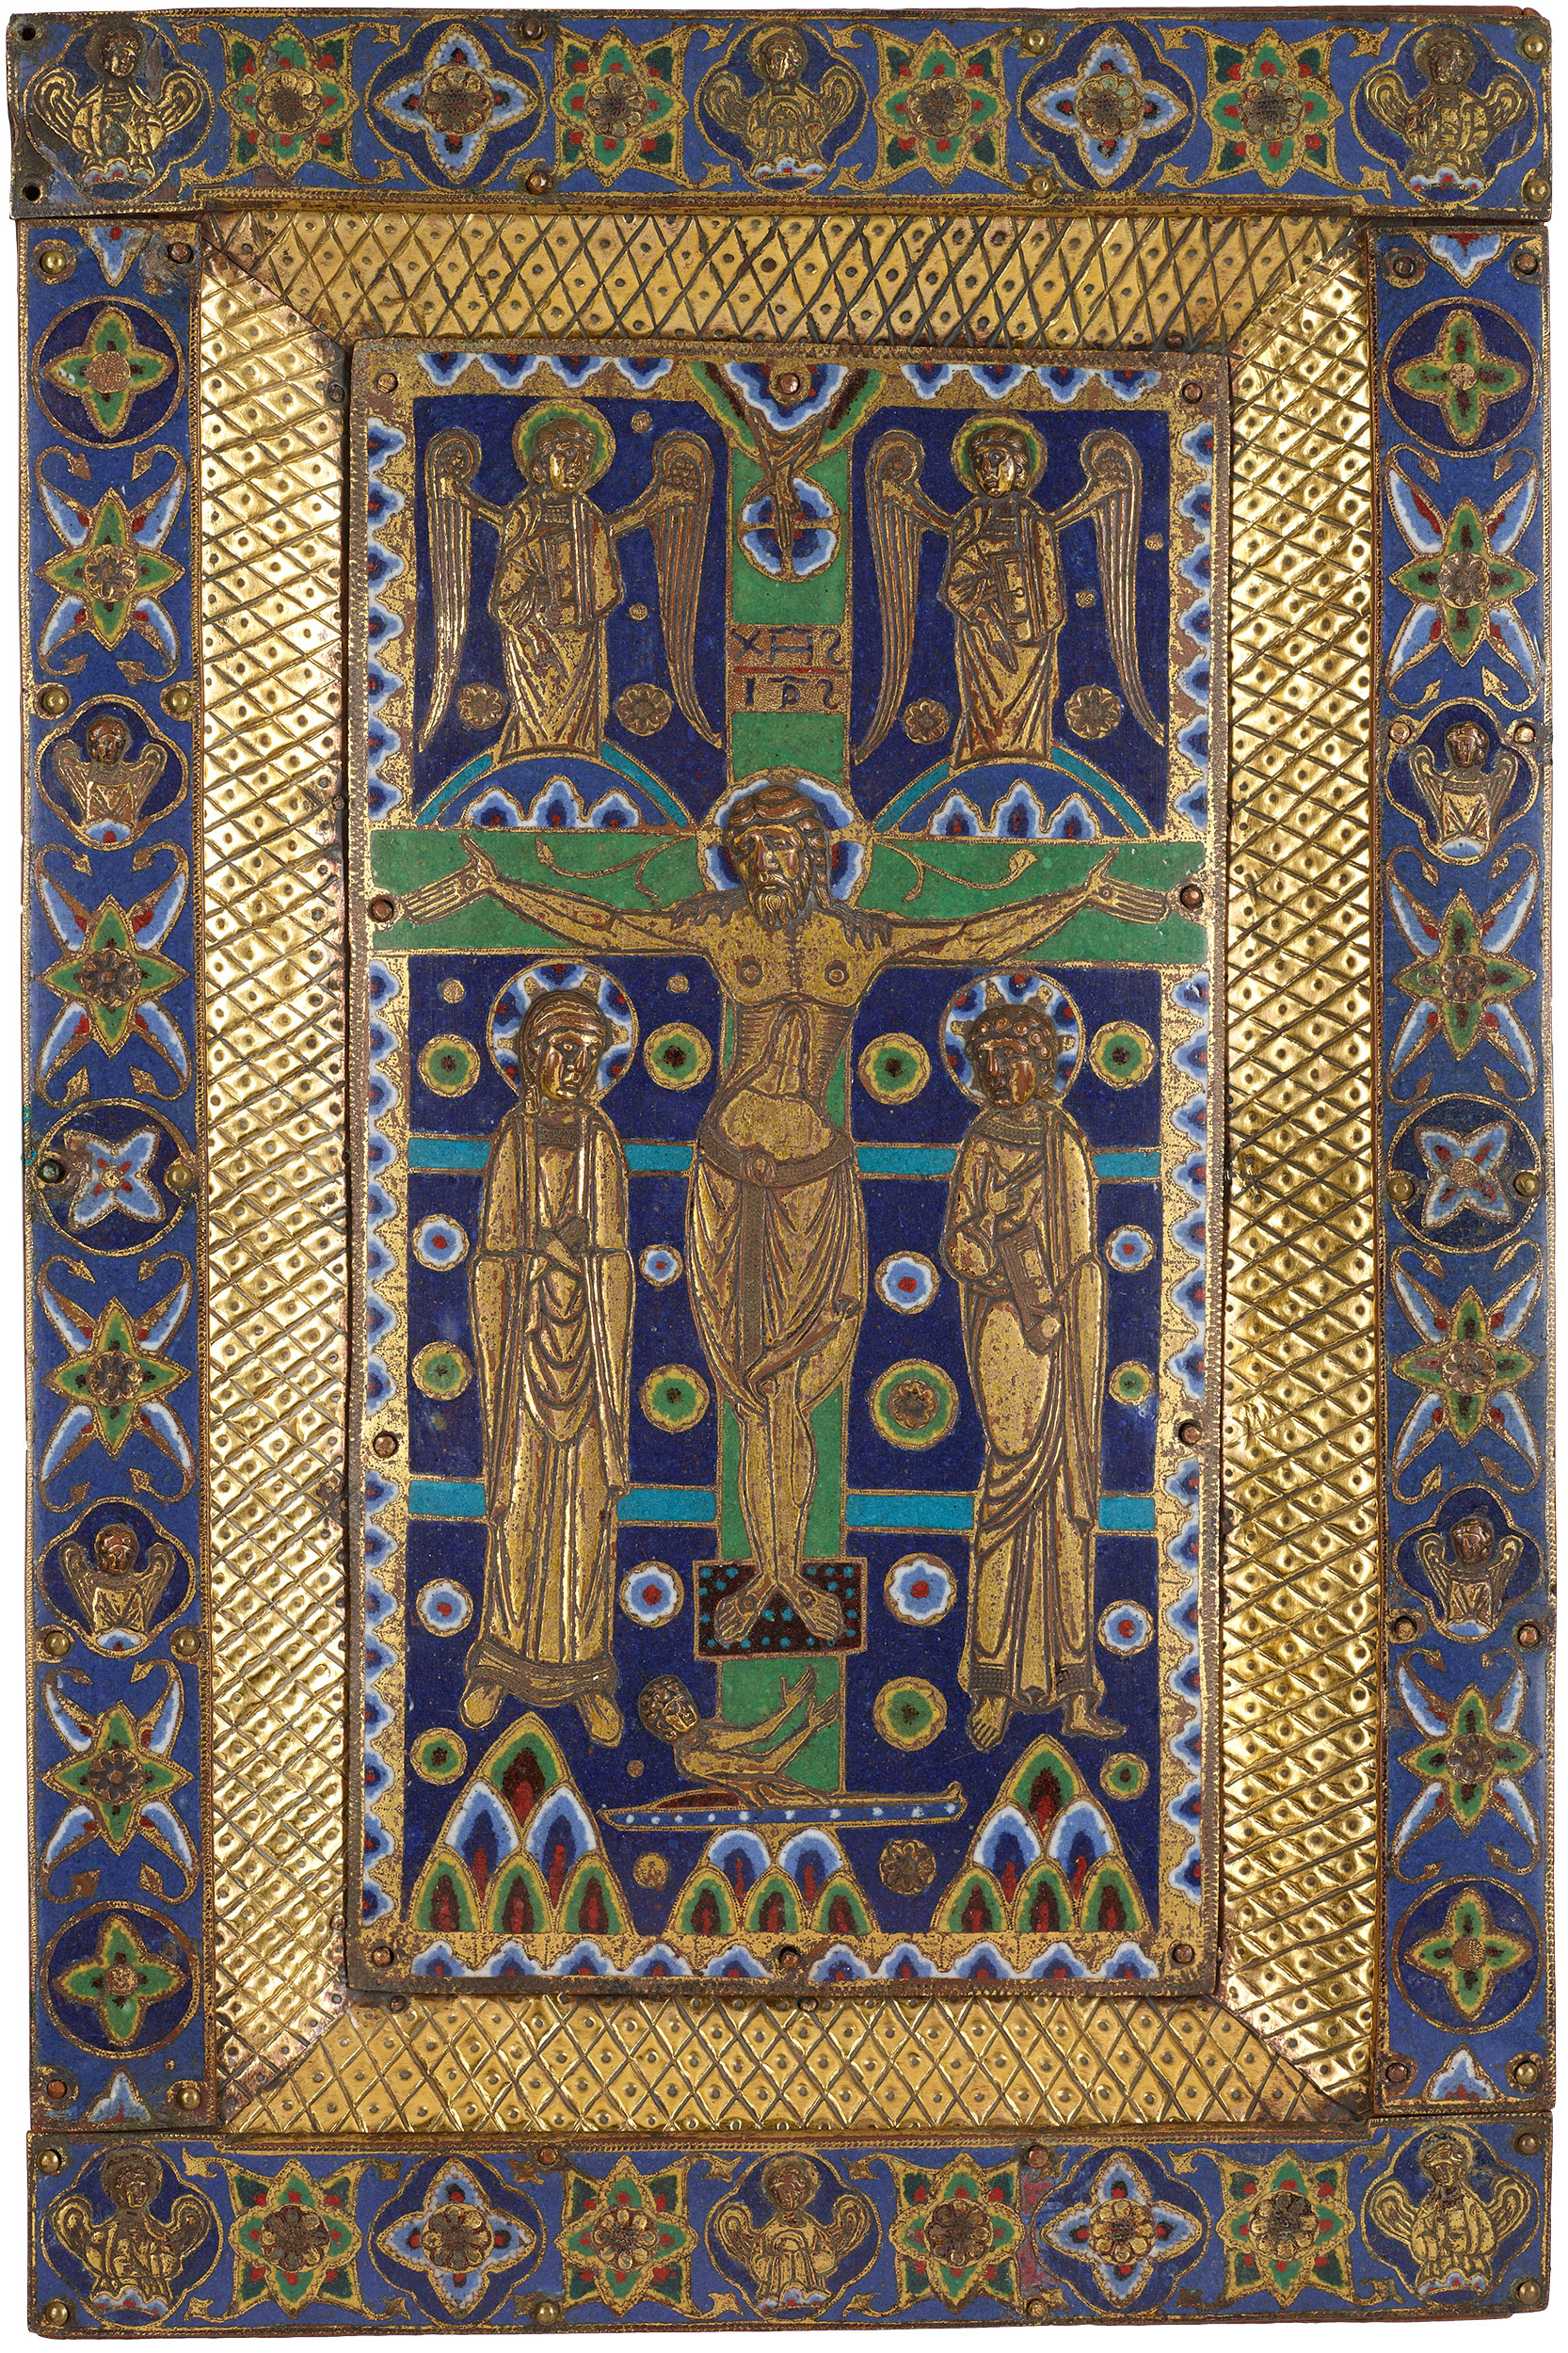 1185-90 Crucifixion dogmatique atelier de la cour d'aquitaine Morgan Library